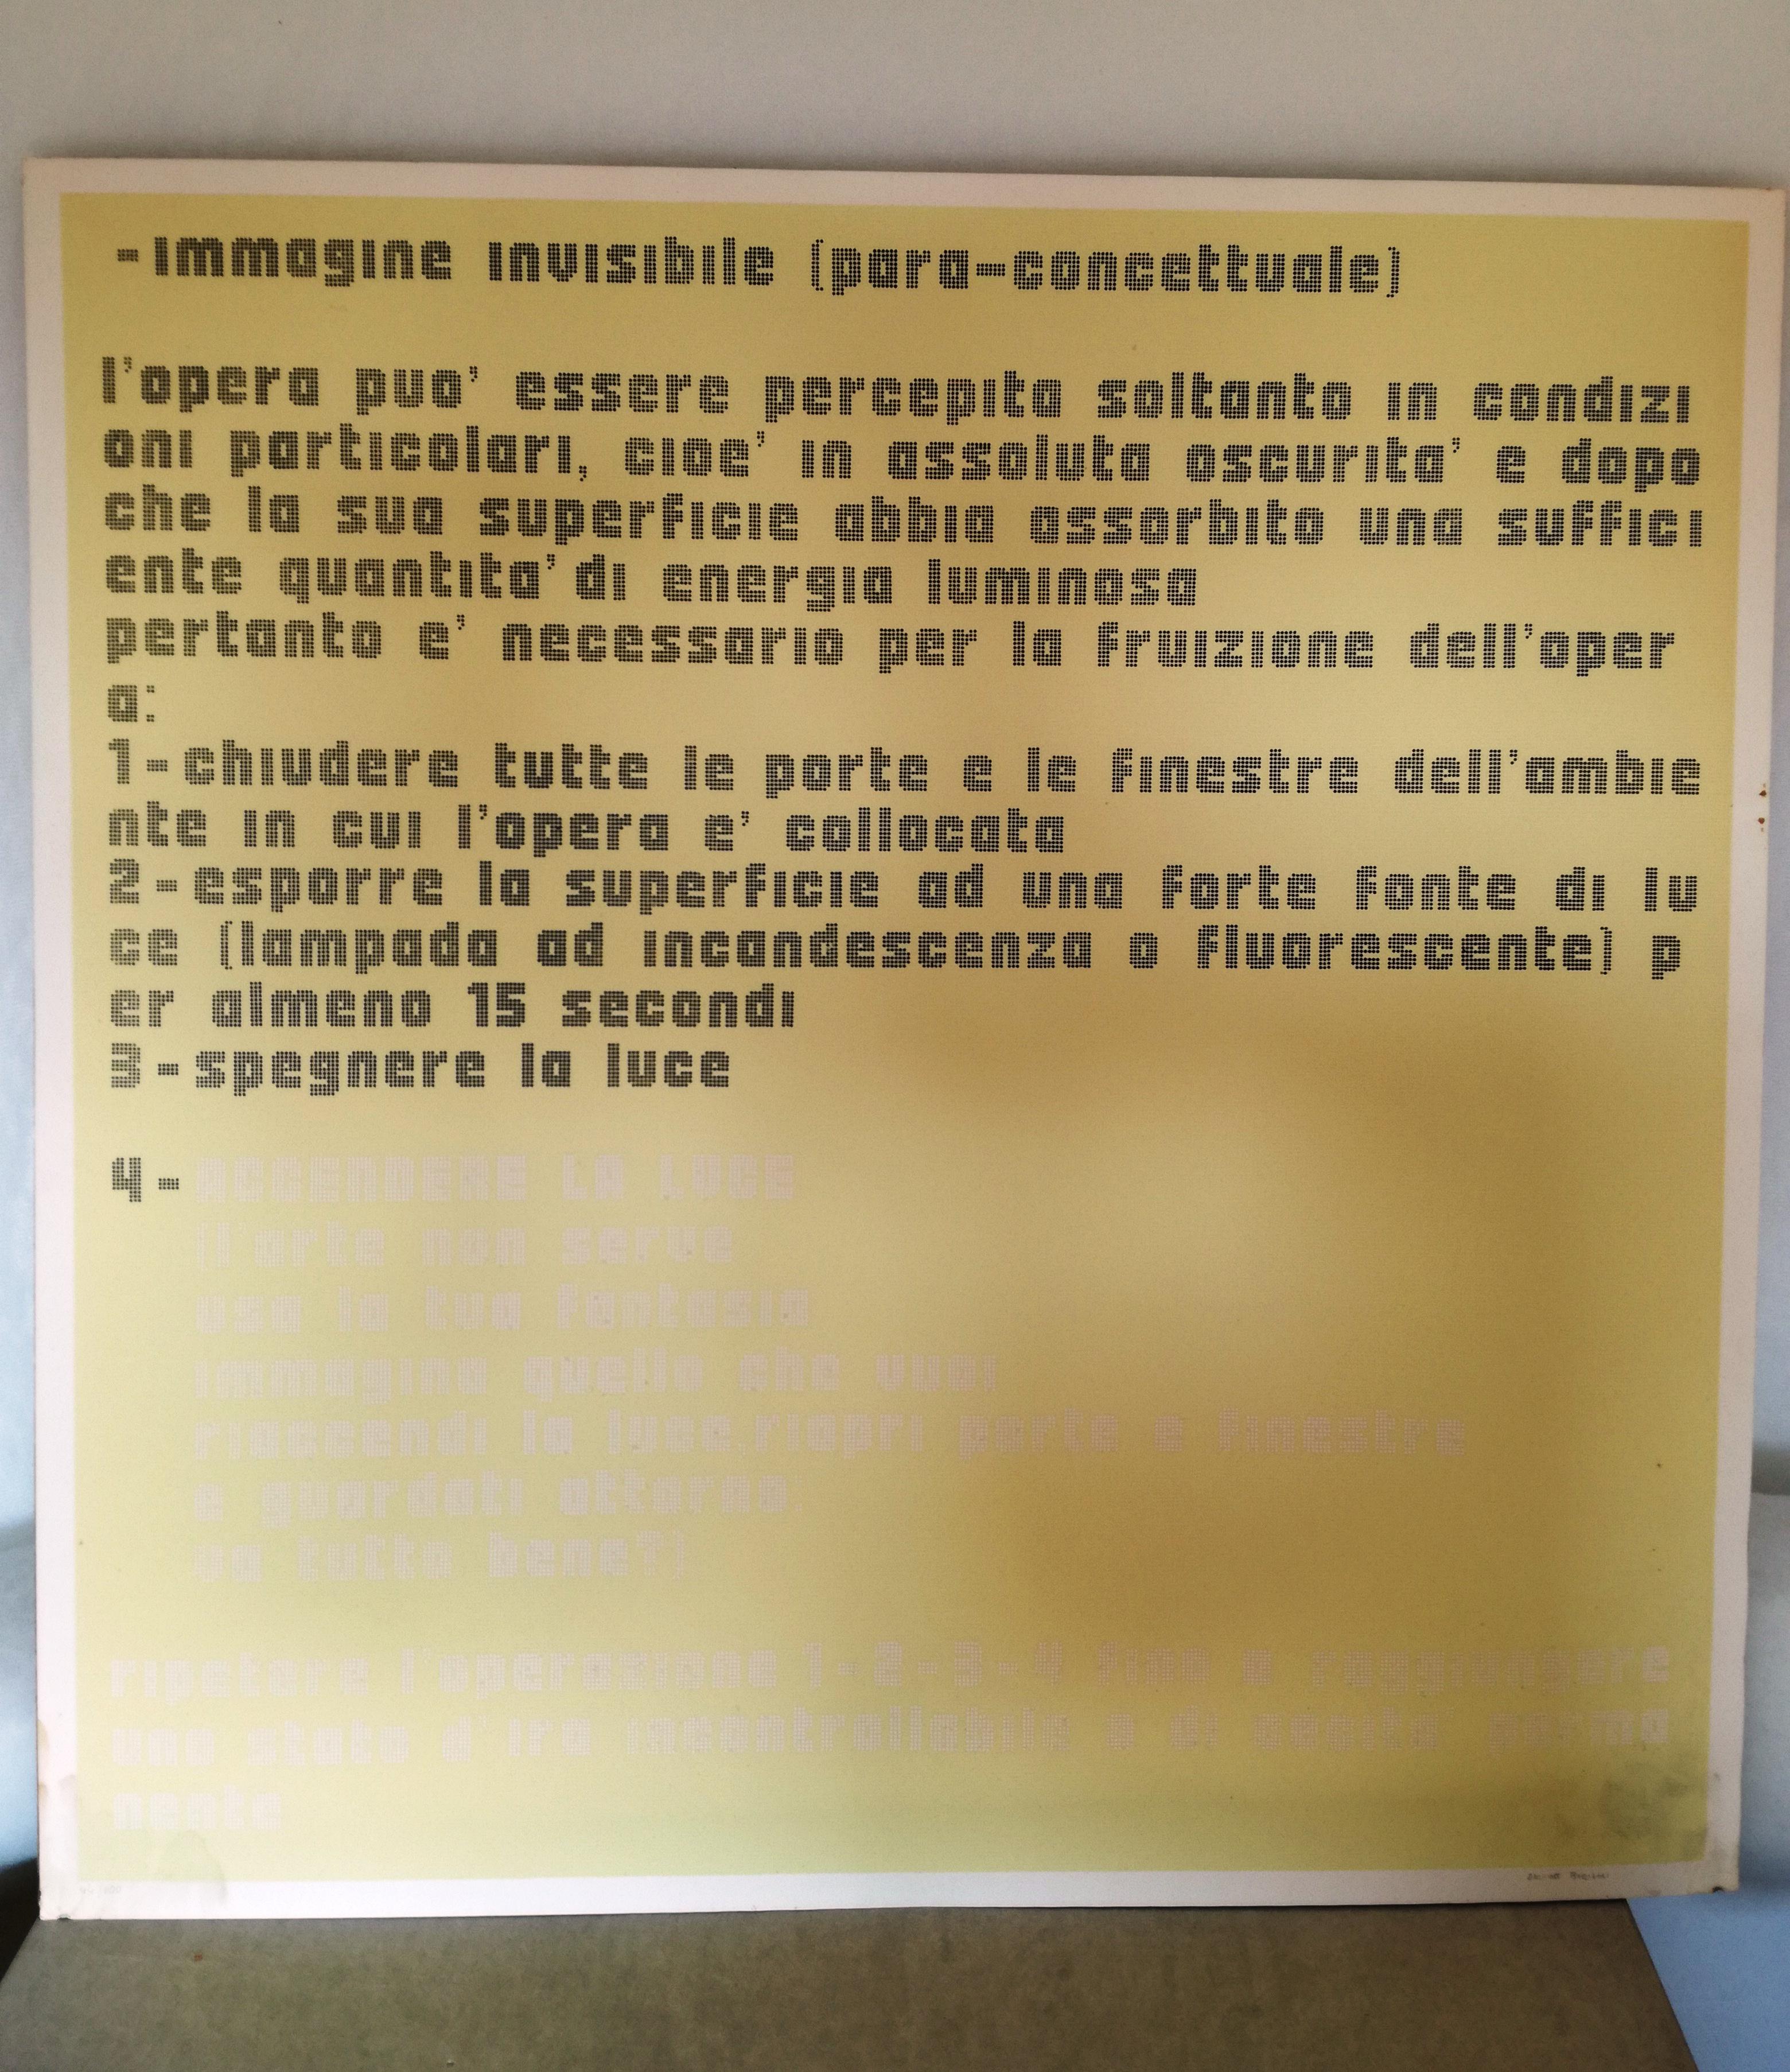 Serigrafia luminescente di Davide Boriani, 1973. Serigrafia Ferappi. Numero 44/100 per Nikol Art. Firmata dall'artista a matita, con timbro impresso Ferappi. Visibile al buio la scritta luminescente 